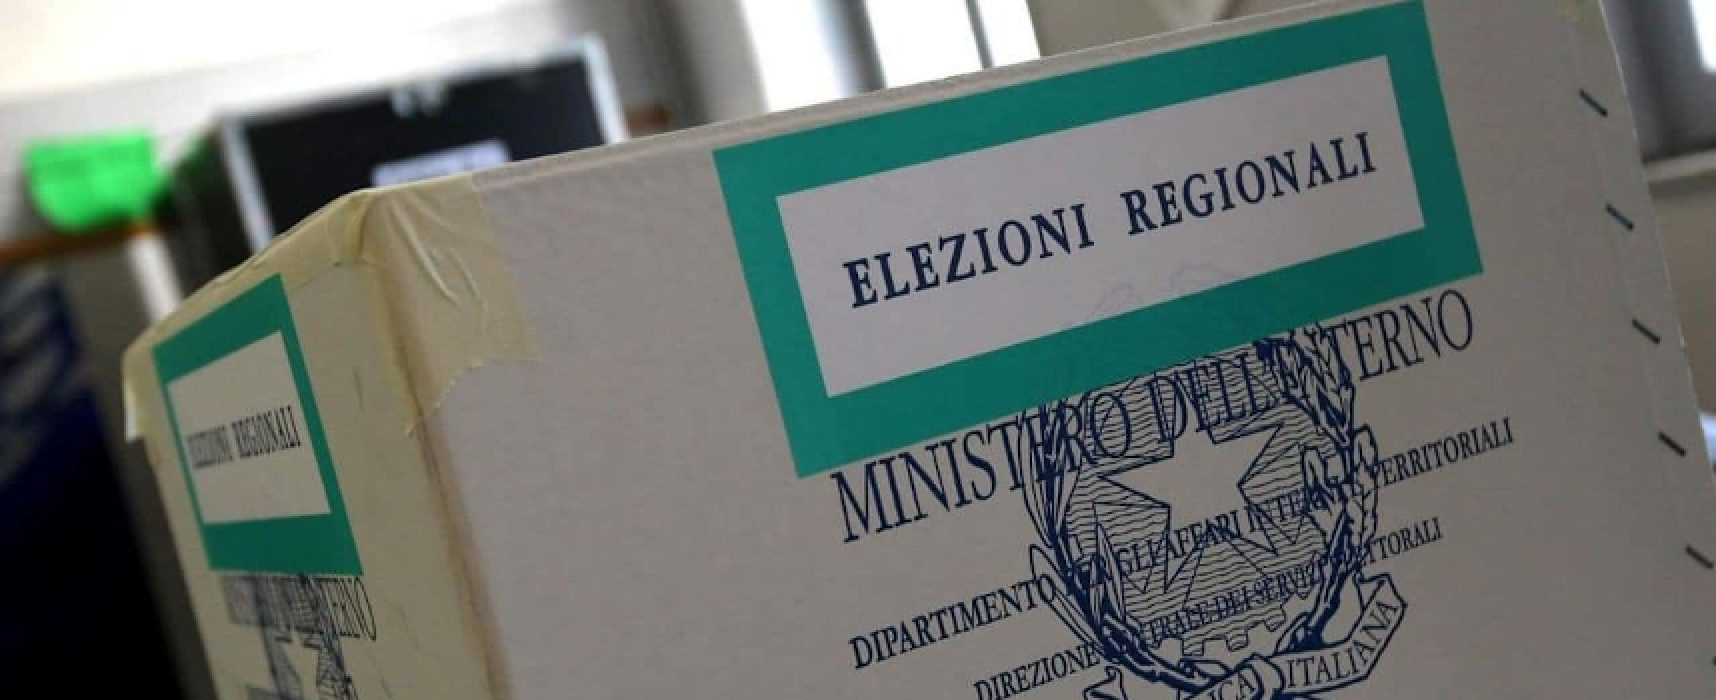 Elezioni regionali e referendum: sorteggio degli scrutatori / QUANDO e DOVE